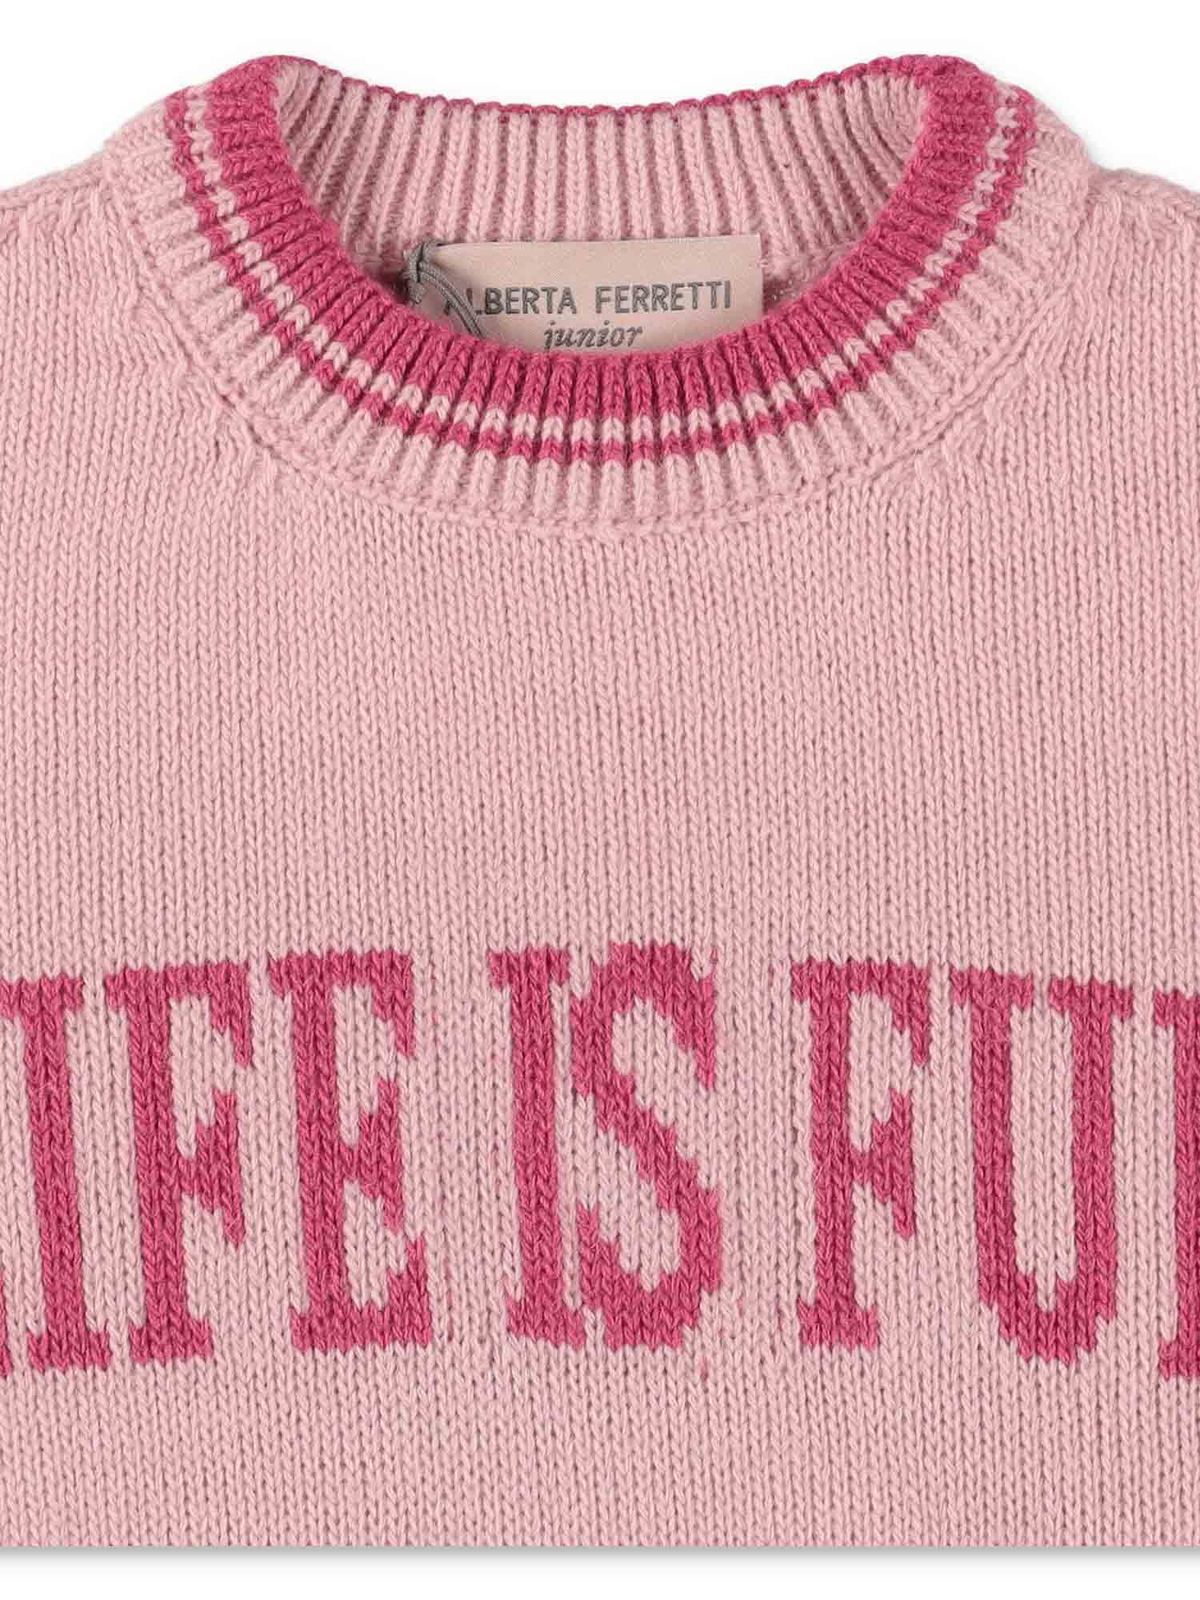 grund 945 gået vanvittigt Knitwear Alberta Ferretti - Life Is Fun sweater in pink - 025416042